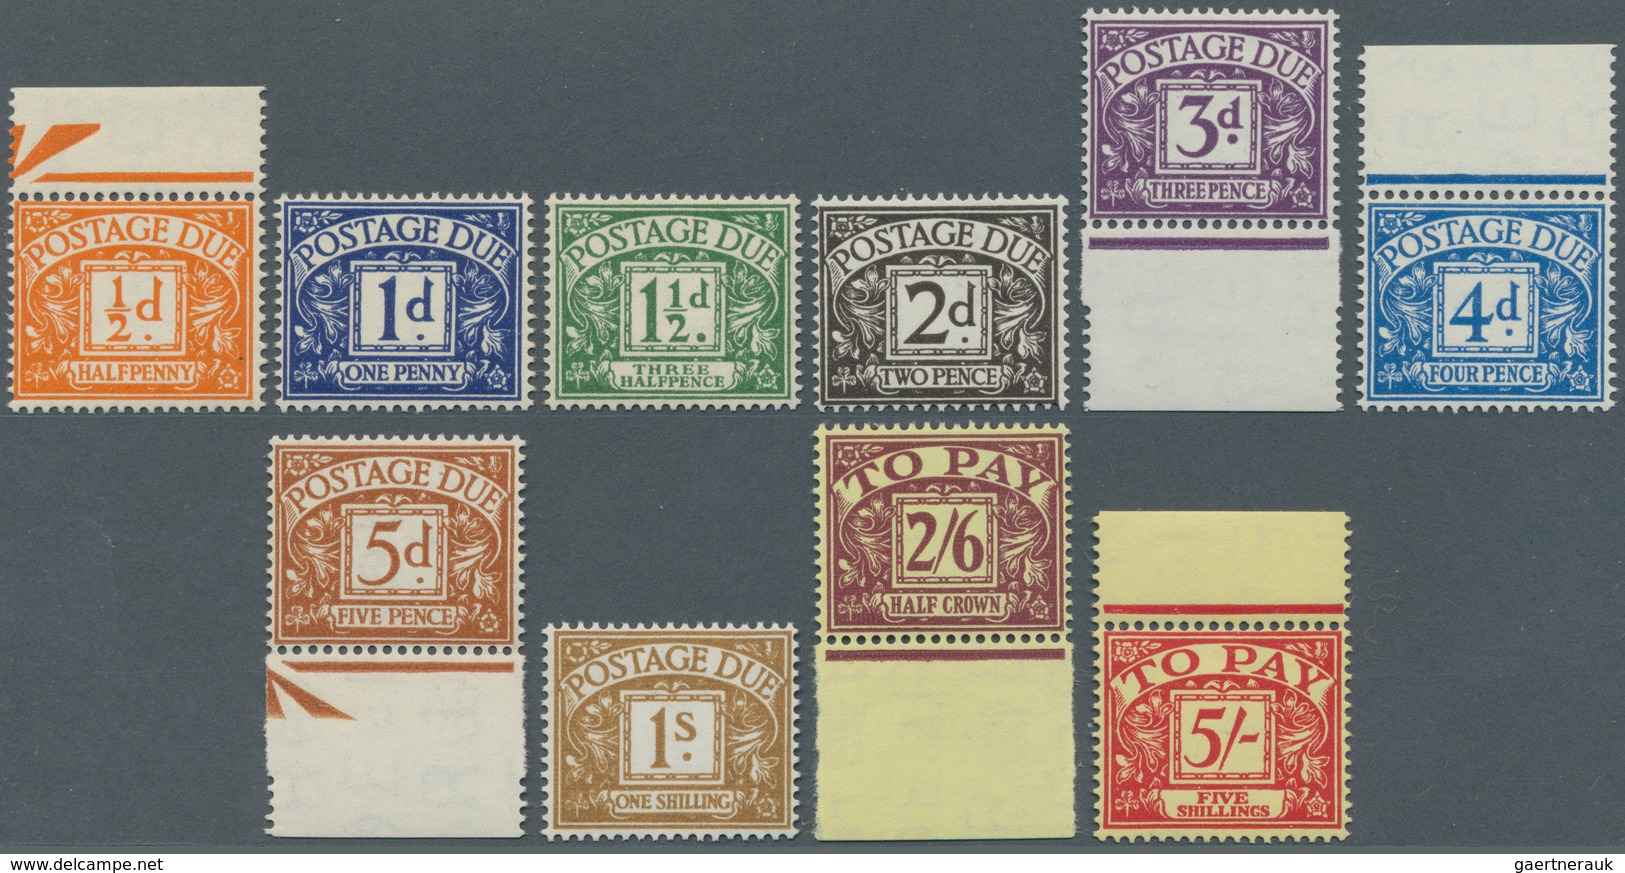 Großbritannien - Portomarken: 1955, 1/2 To 5 Sh Complete Set, Mint Never Hinged - Postage Due